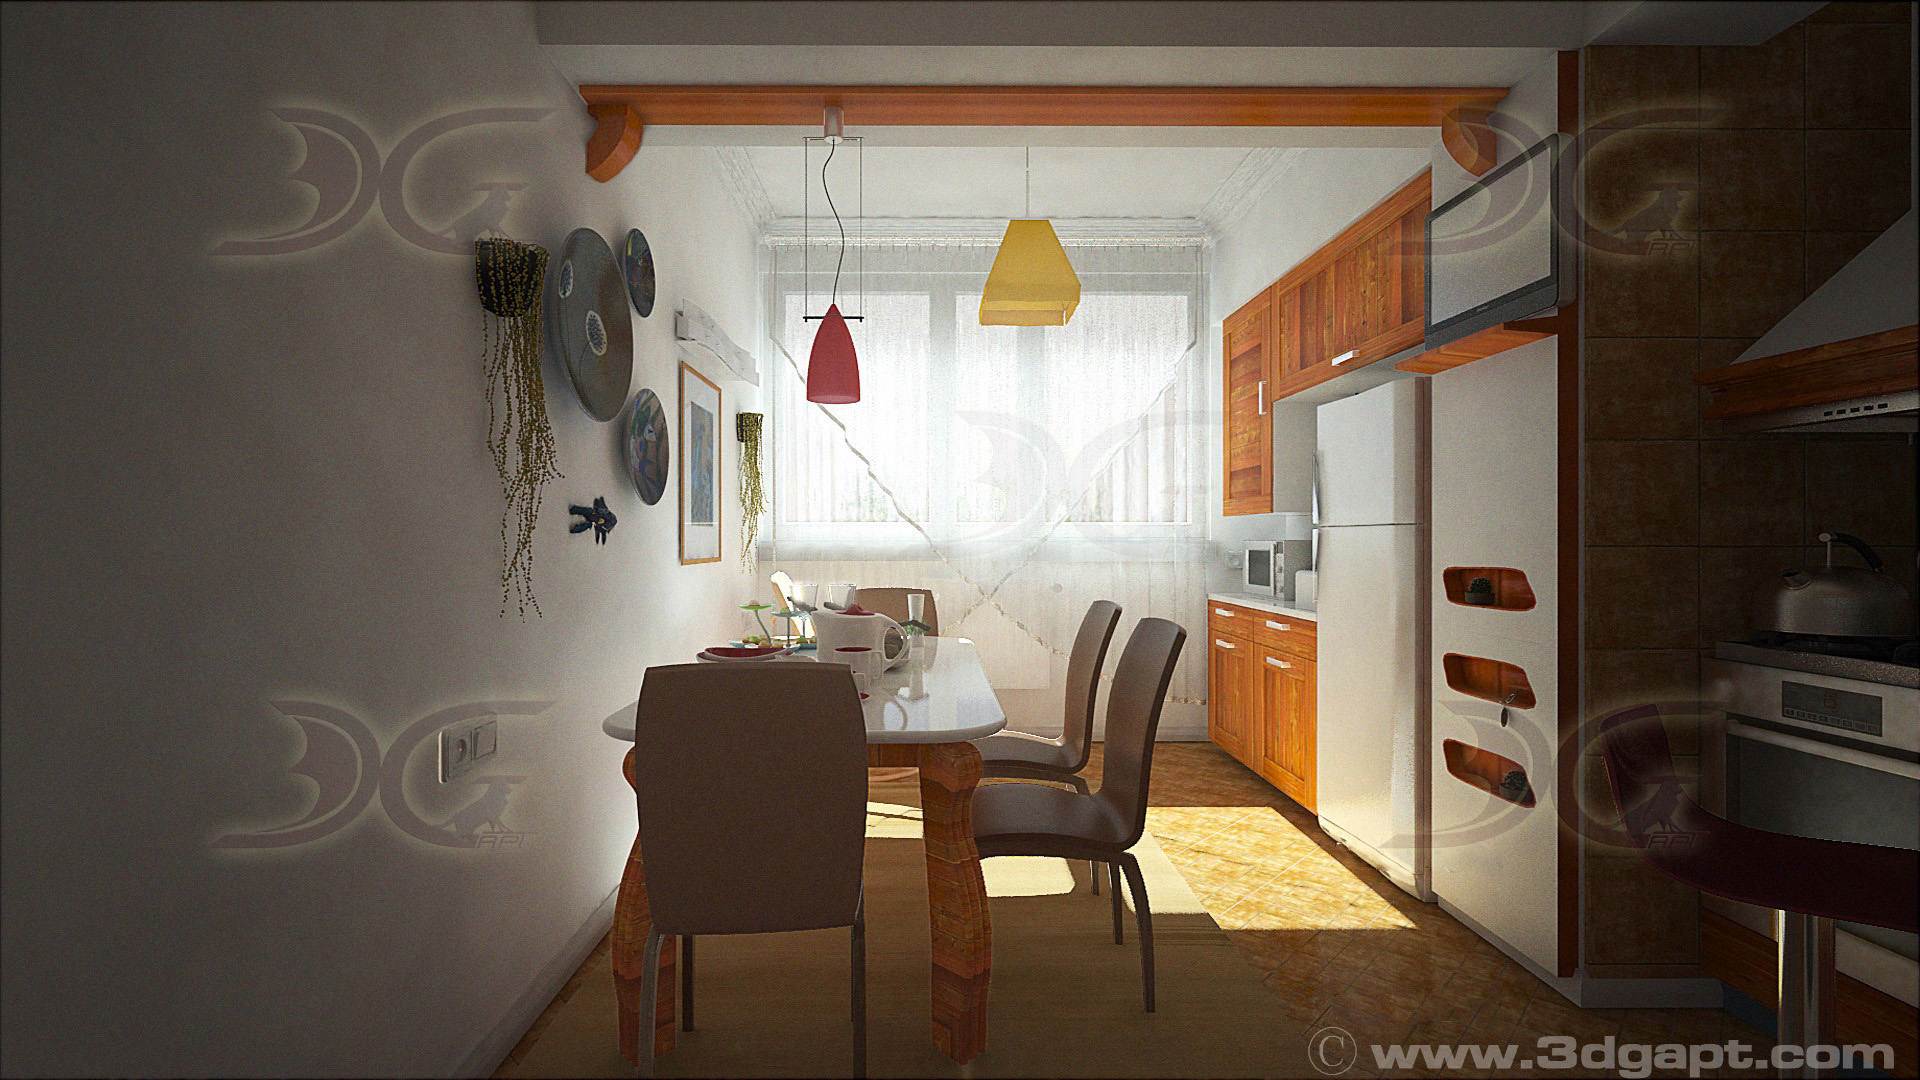 Architecture Interior Kitchen 3versions 24